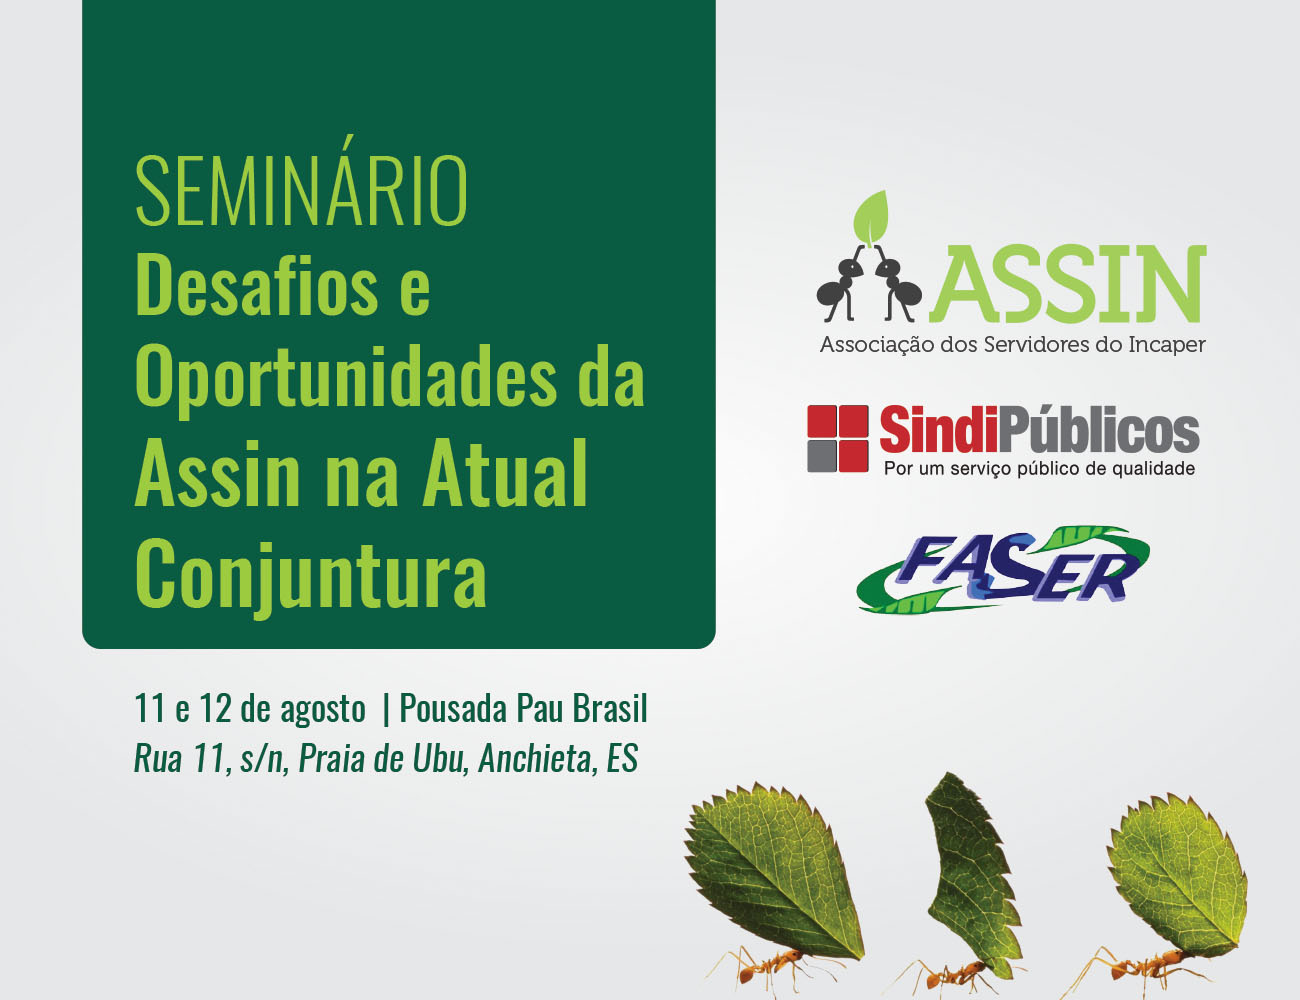 Assin promove Seminário de Formação para associados